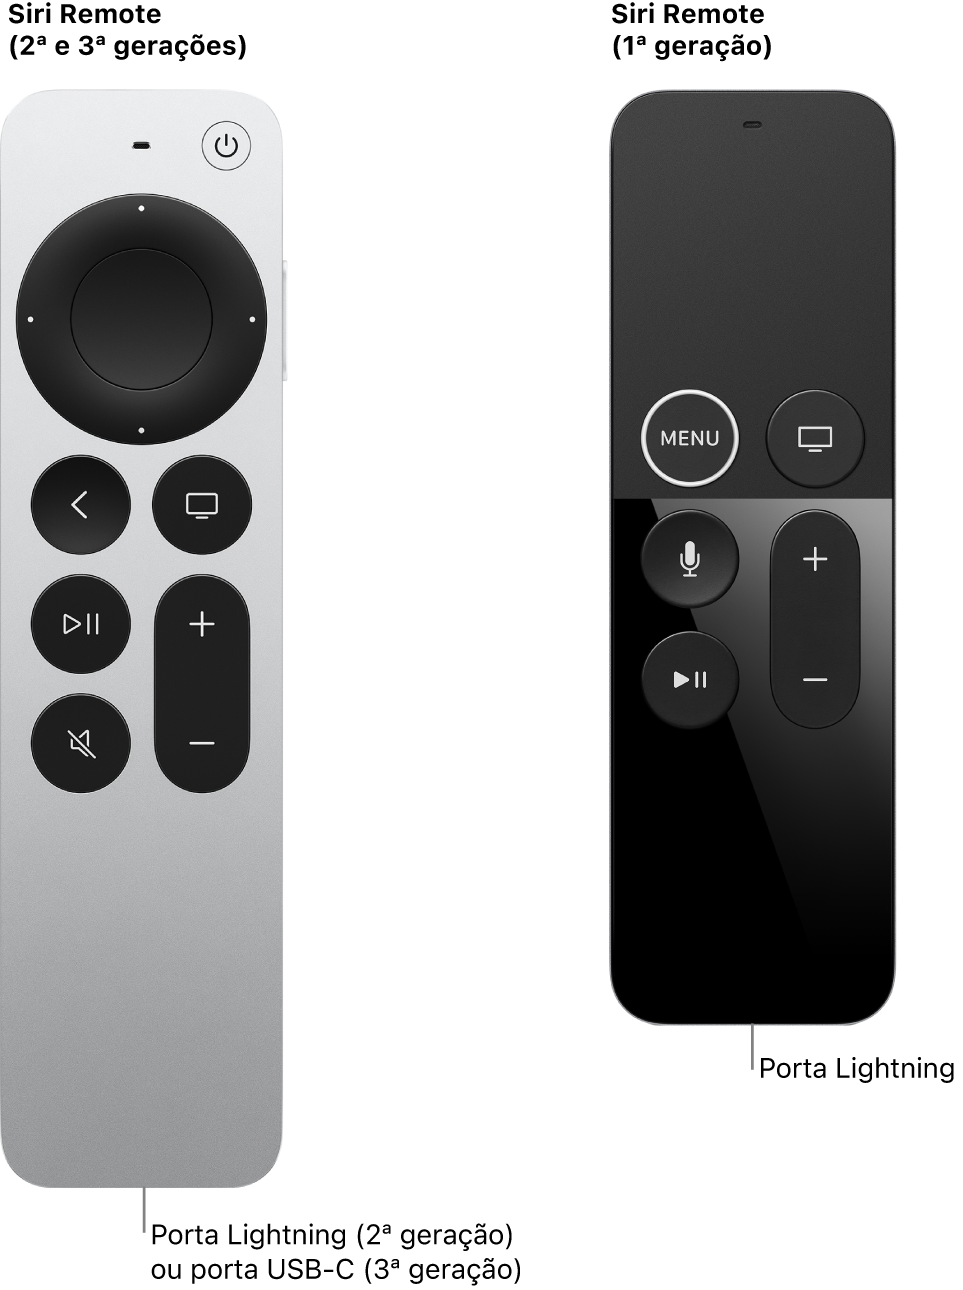 Imagem do Siri Remote (2ª e 3ª gerações) e do Siri Remote (1ª geração) mostrando a porta do conector